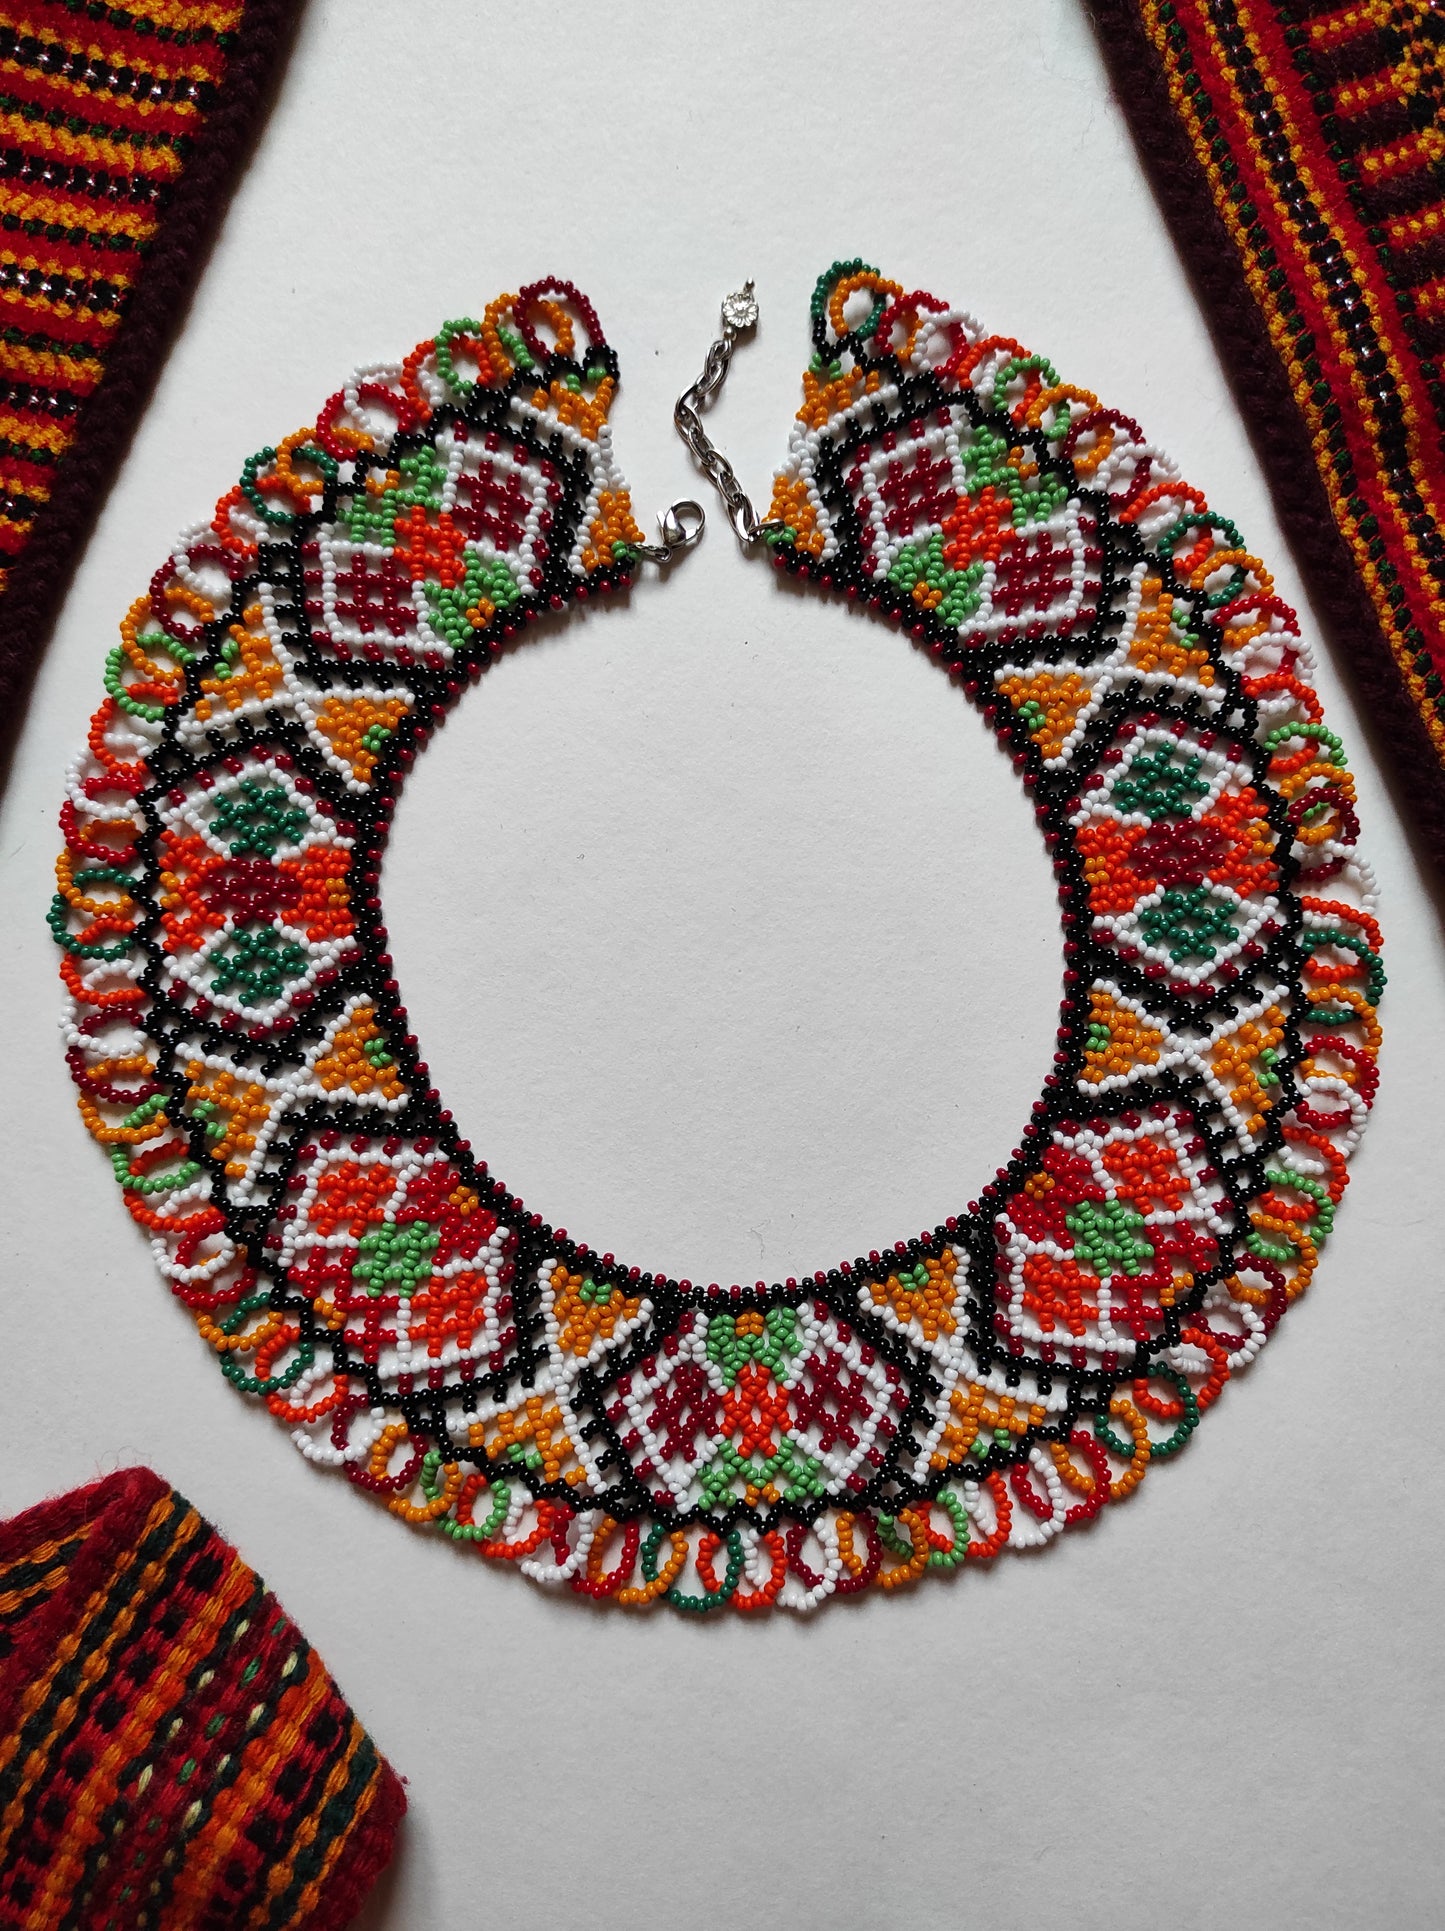 Sylianka "Kosmacka large" from beads